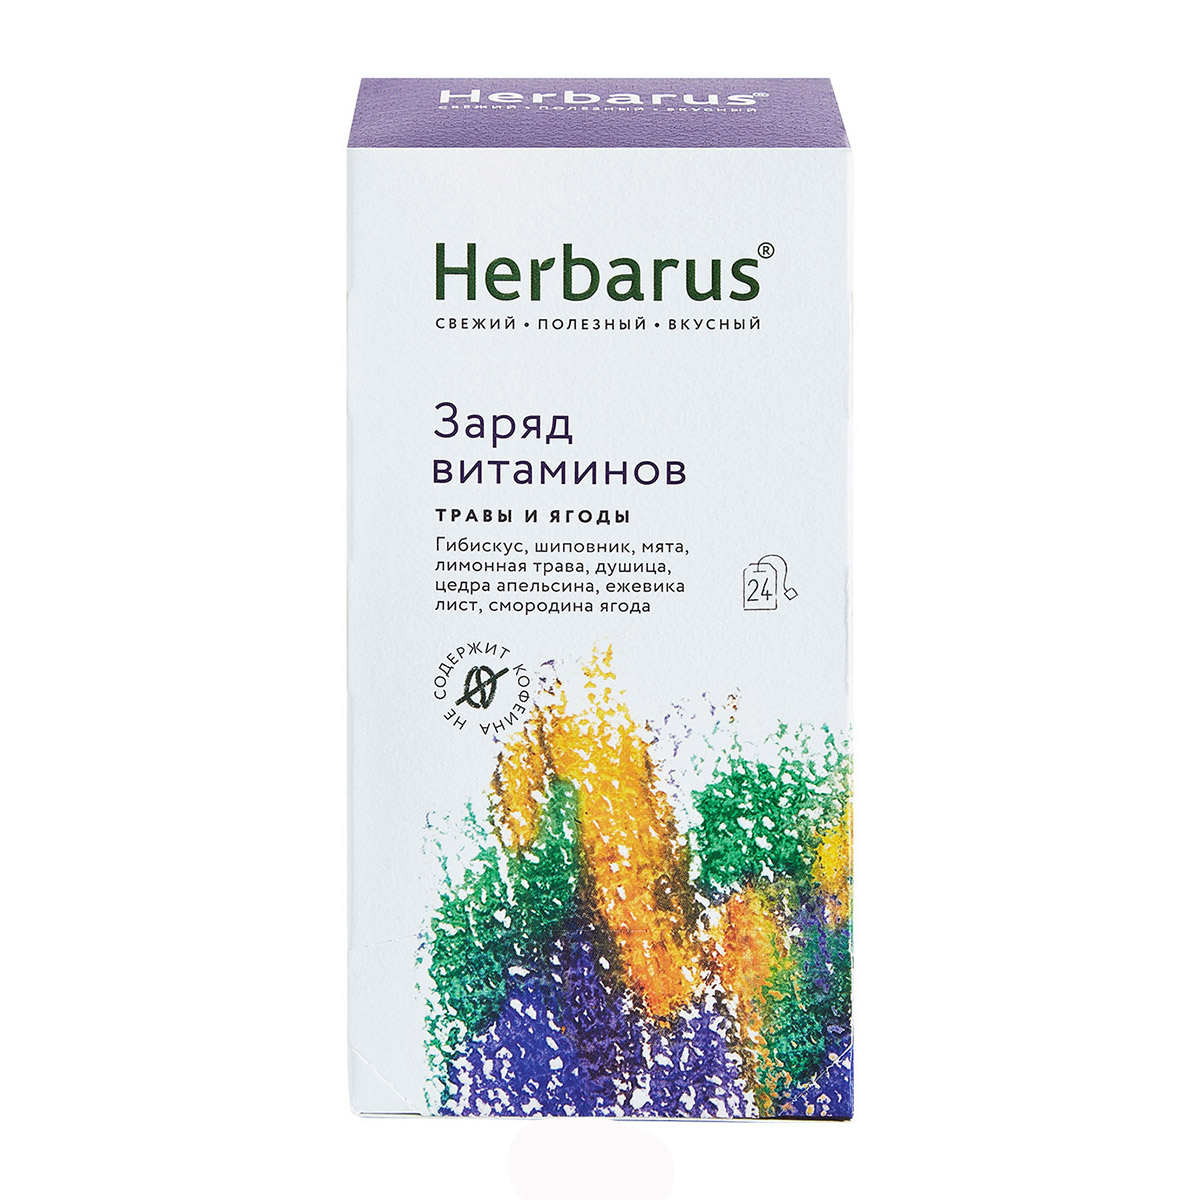 Herbarus Чайный напиток Заряд витаминов, 24 х 1,8 г (Herbarus, Травы и ягоды) herbarus чайный напиток имбирная энергия 24 х 1 8 г herbarus травы и ягоды